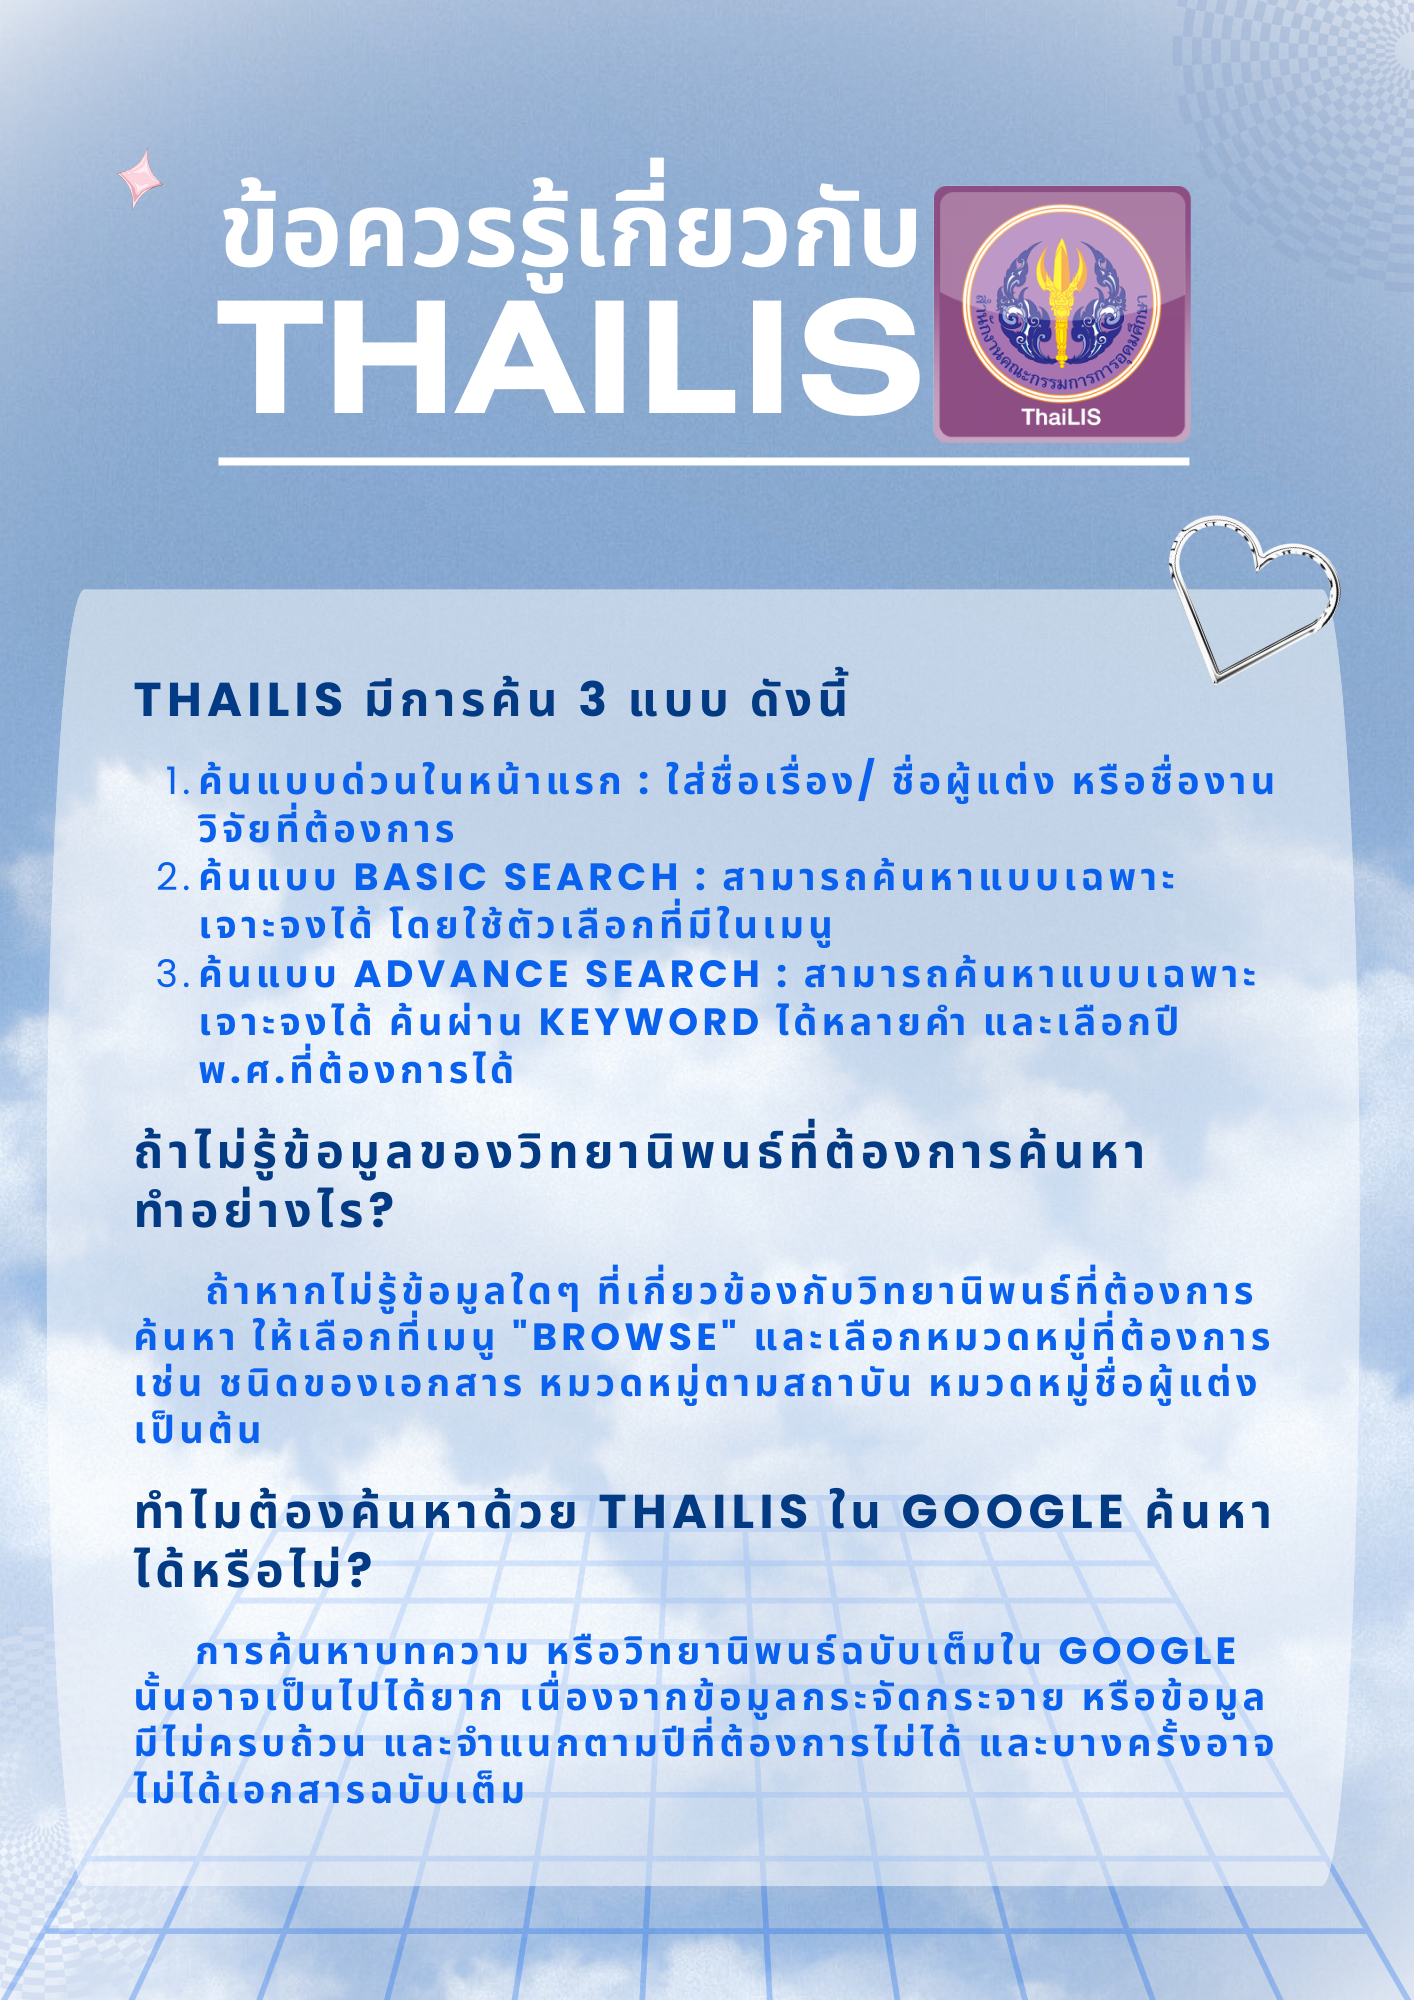 1. แนะนำฐานข้อมูล TDC หรือ Thai Digital Collection